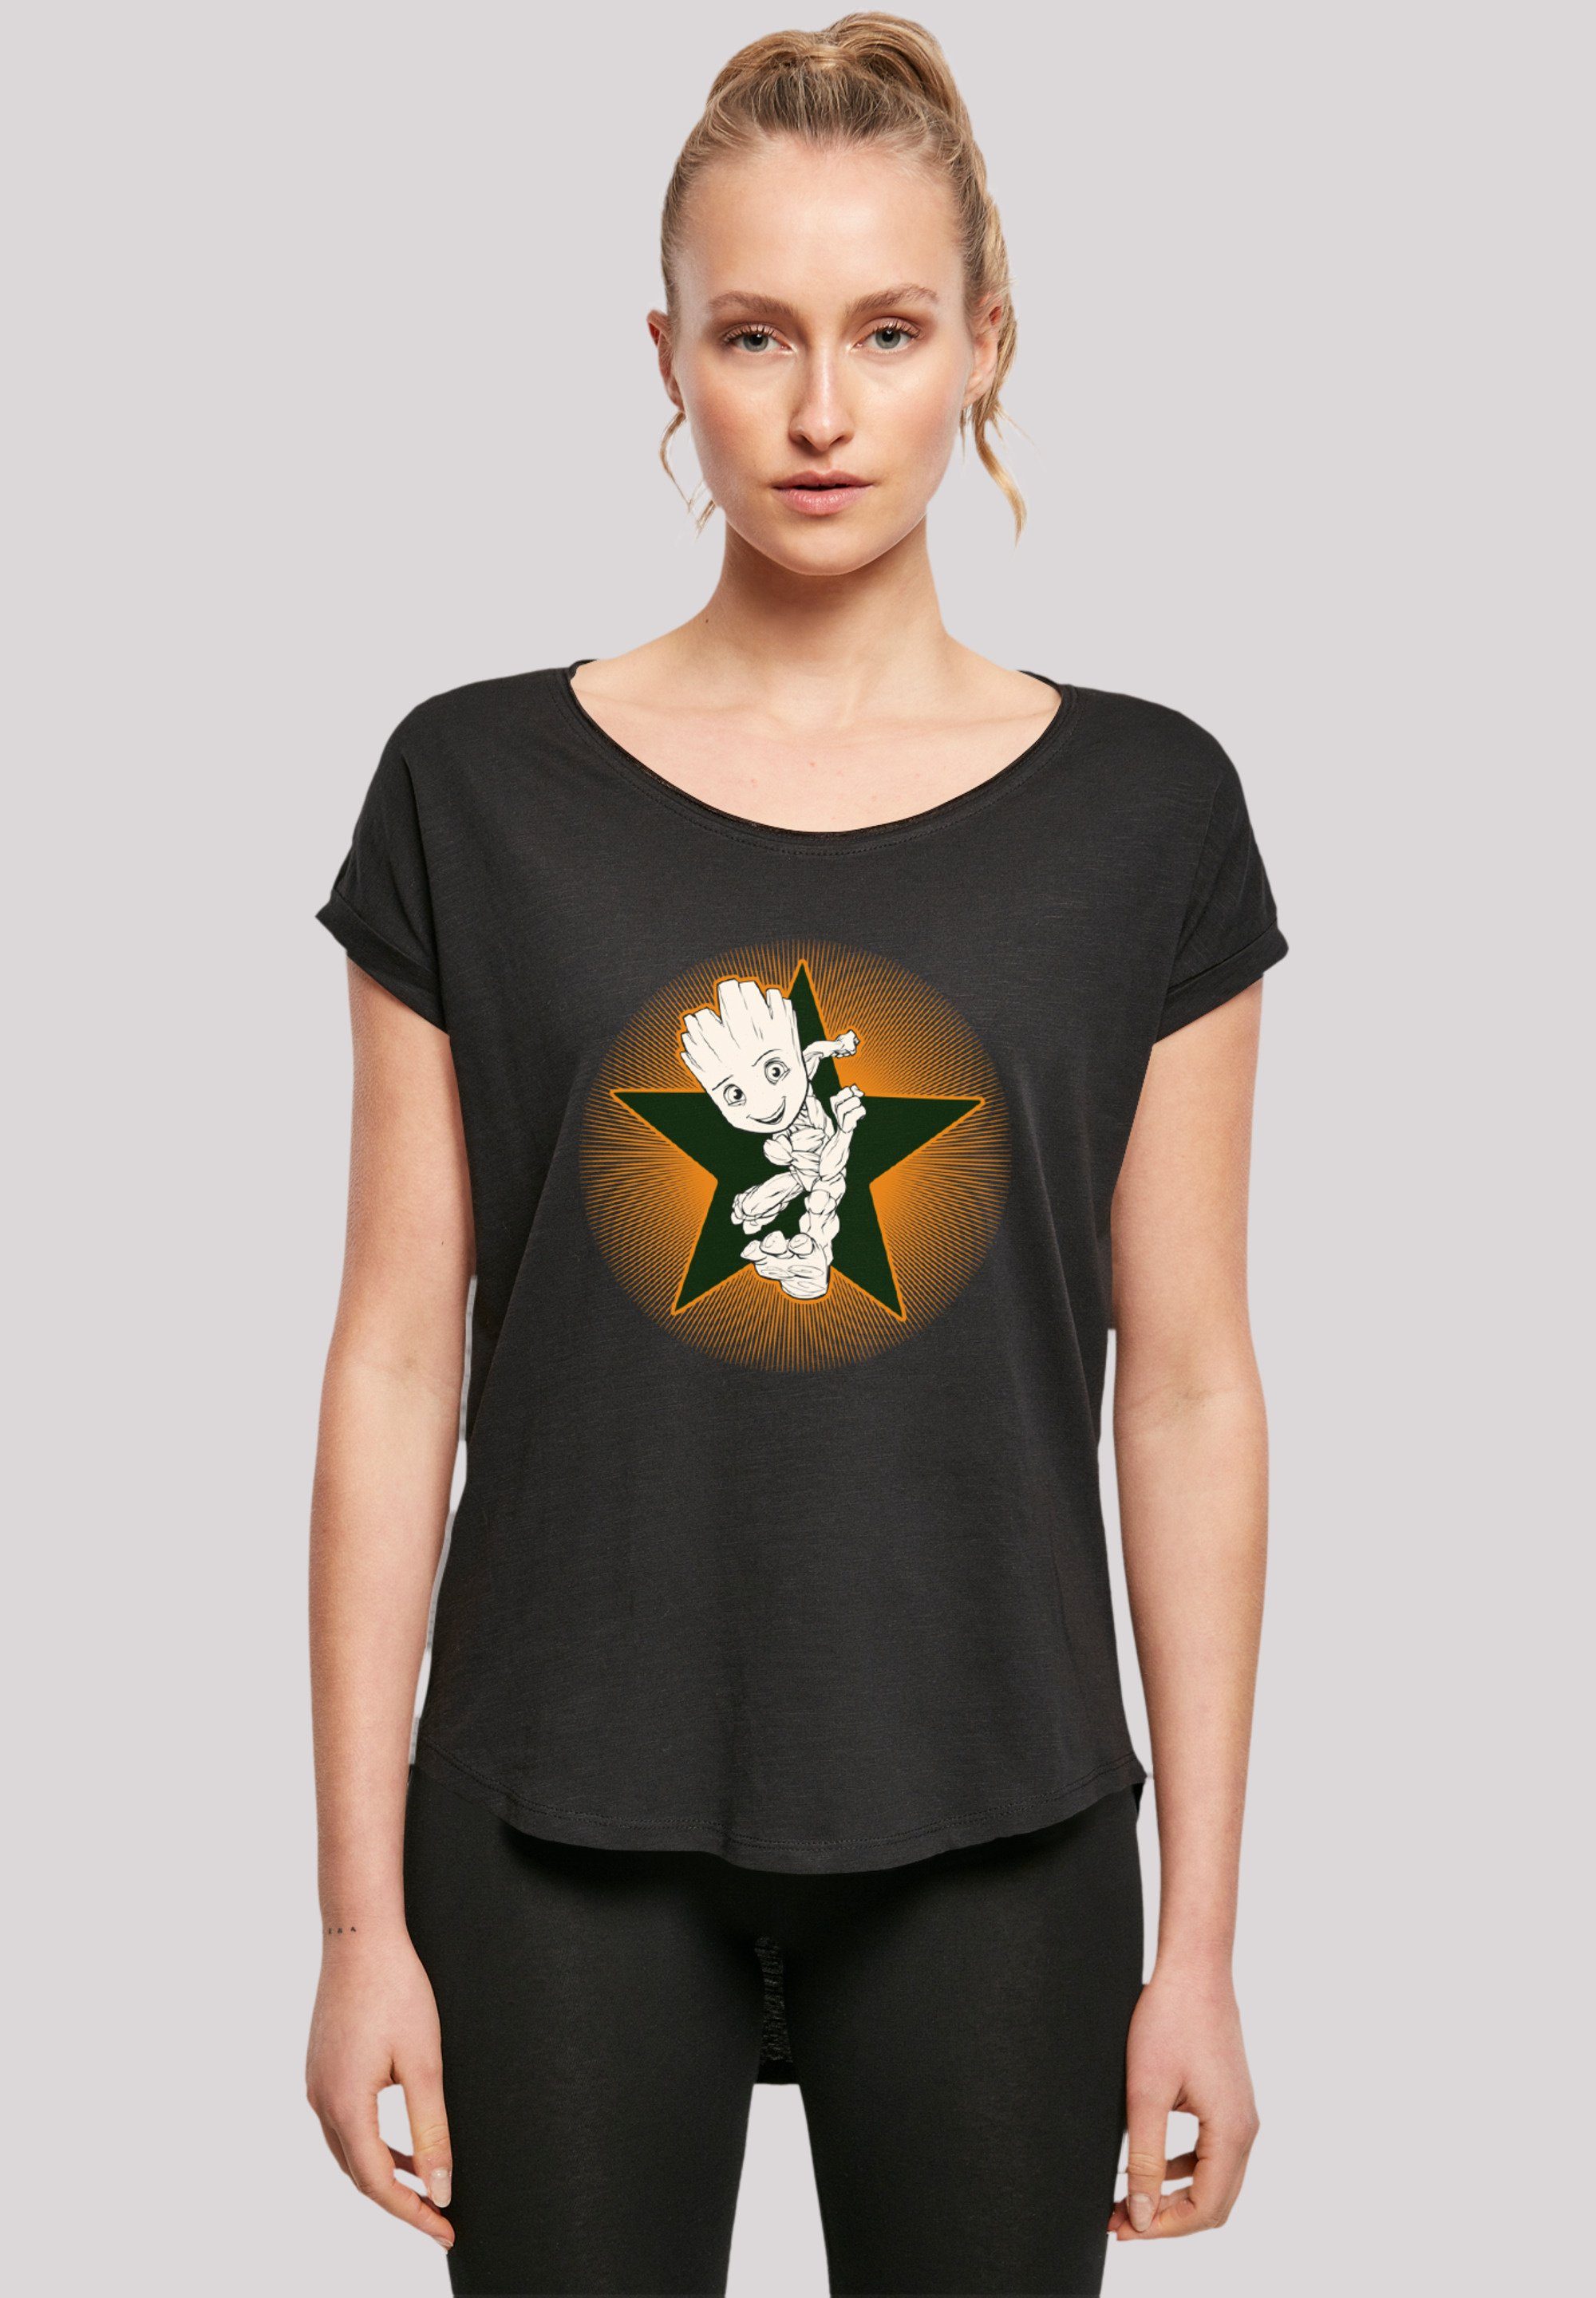 F4NT4STIC T-Shirt Marvel Guardians Of The Galaxy Groot Star Premium Qualität,  Hinten extra lang geschnittenes Damen T-Shirt